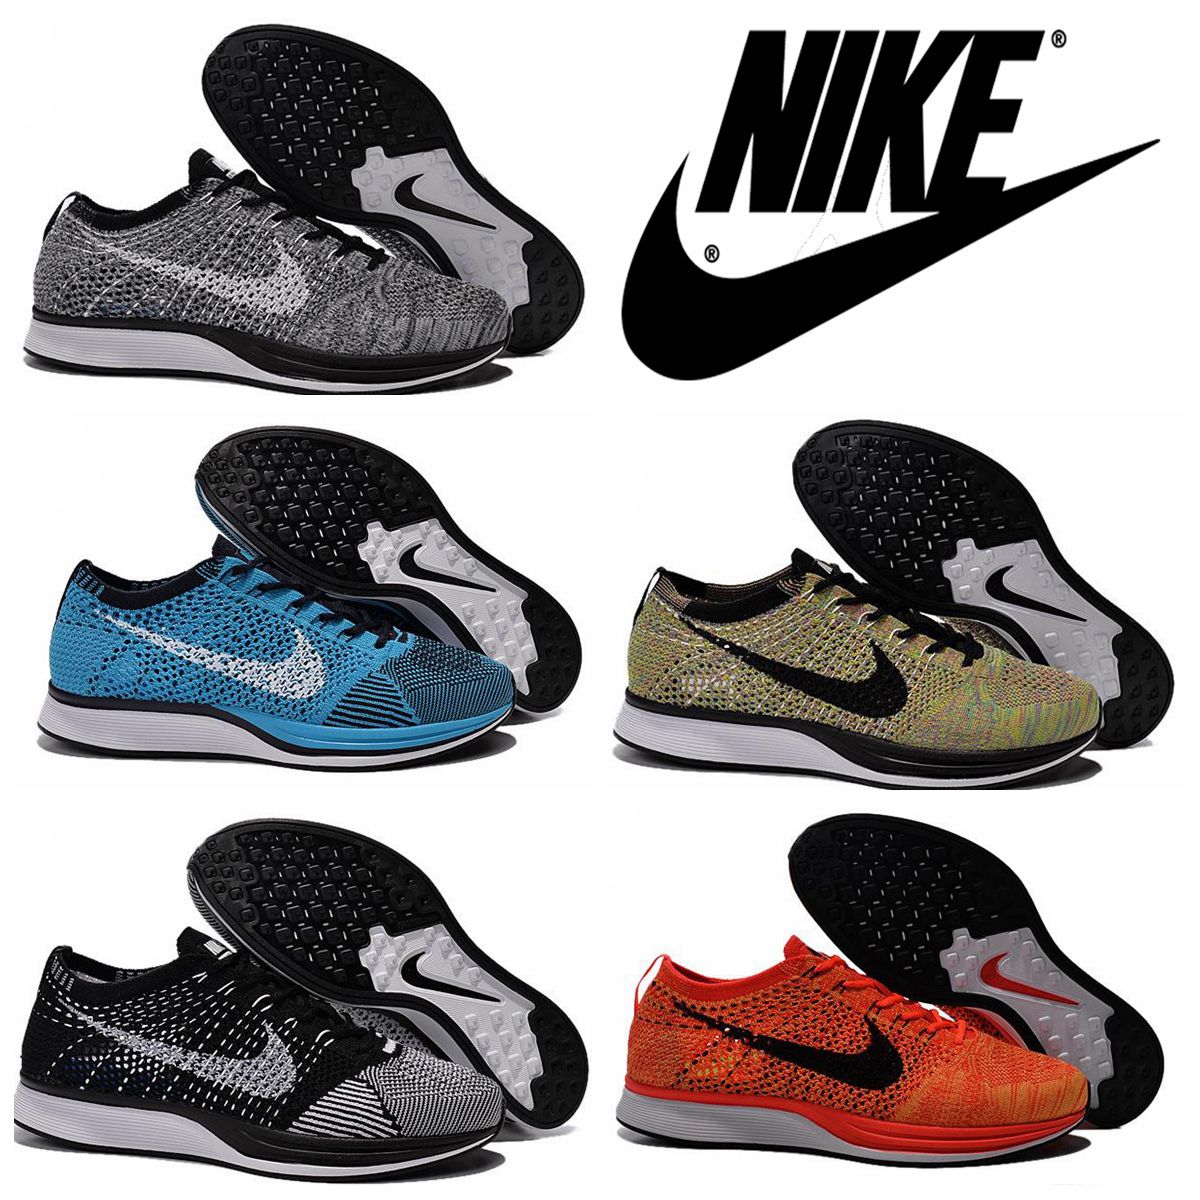 2016 Nike Flyknit Racer Negro Blanco Kanye West de los hombres de los zapatos de Oreo, venta al por mayor Nike Racer Blue Lagoon Negro Gecko 526 628 401 Hombres zapatilla de deporte